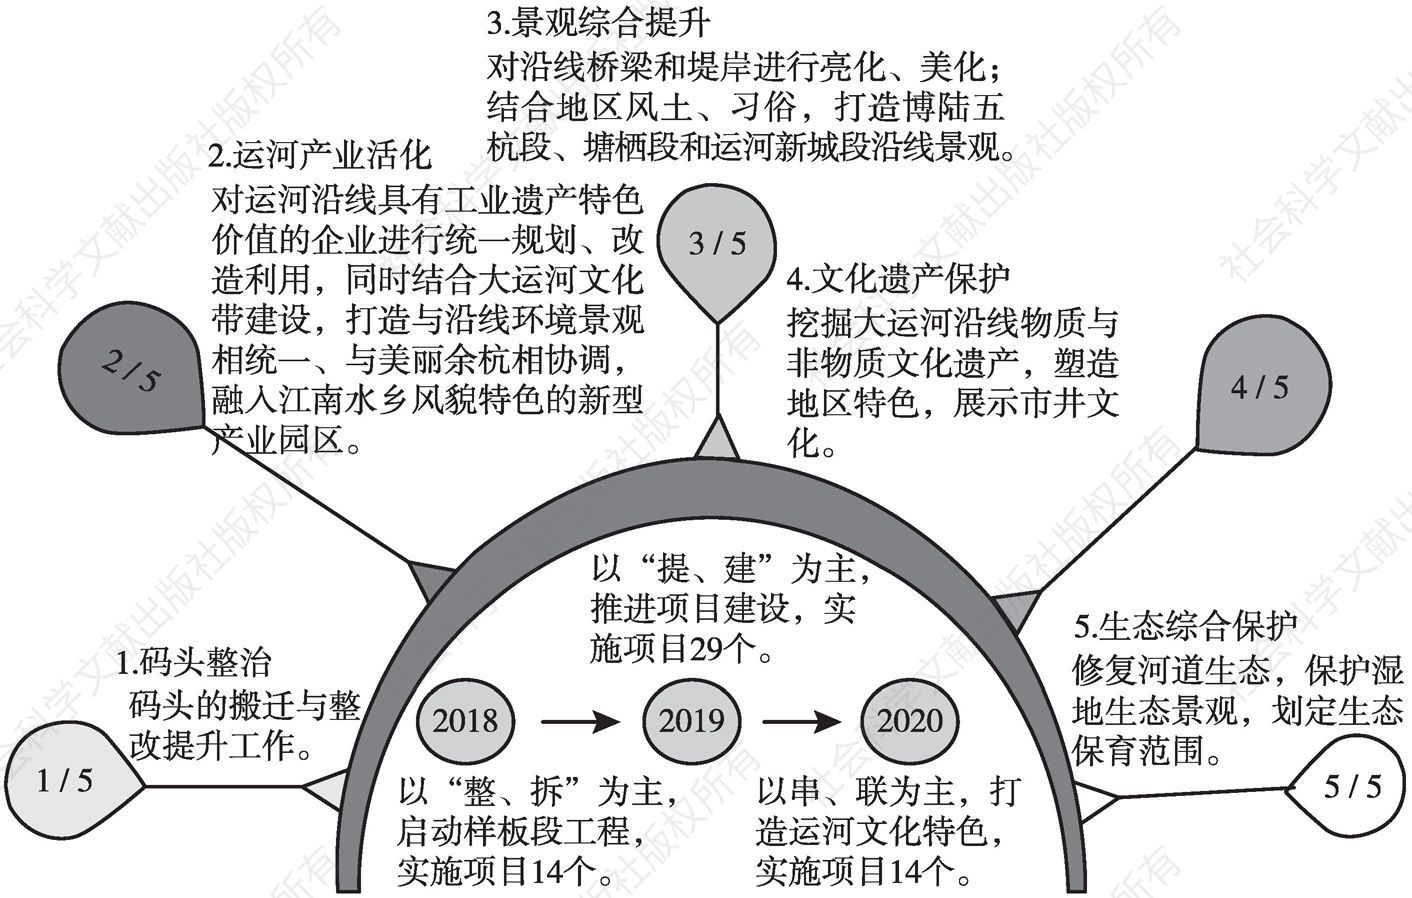 图5 杭州市余杭区大运河文化带保护开发三年行动计划示意